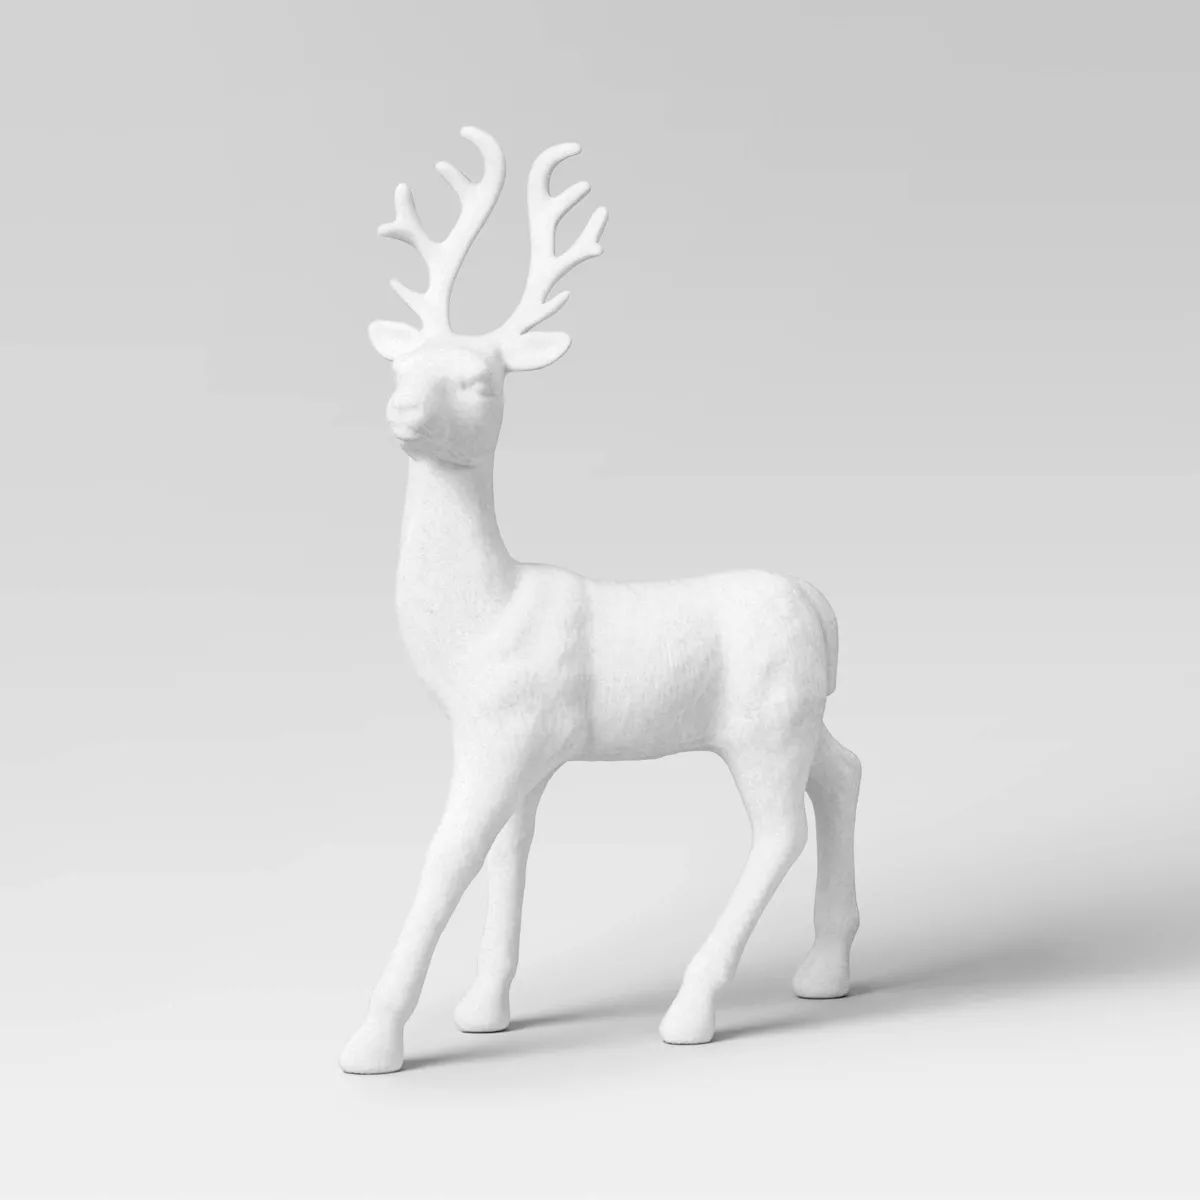 12.5" Metallic Plastic Standing Deer Animal Christmas Figurine - Wondershop™ White | Target